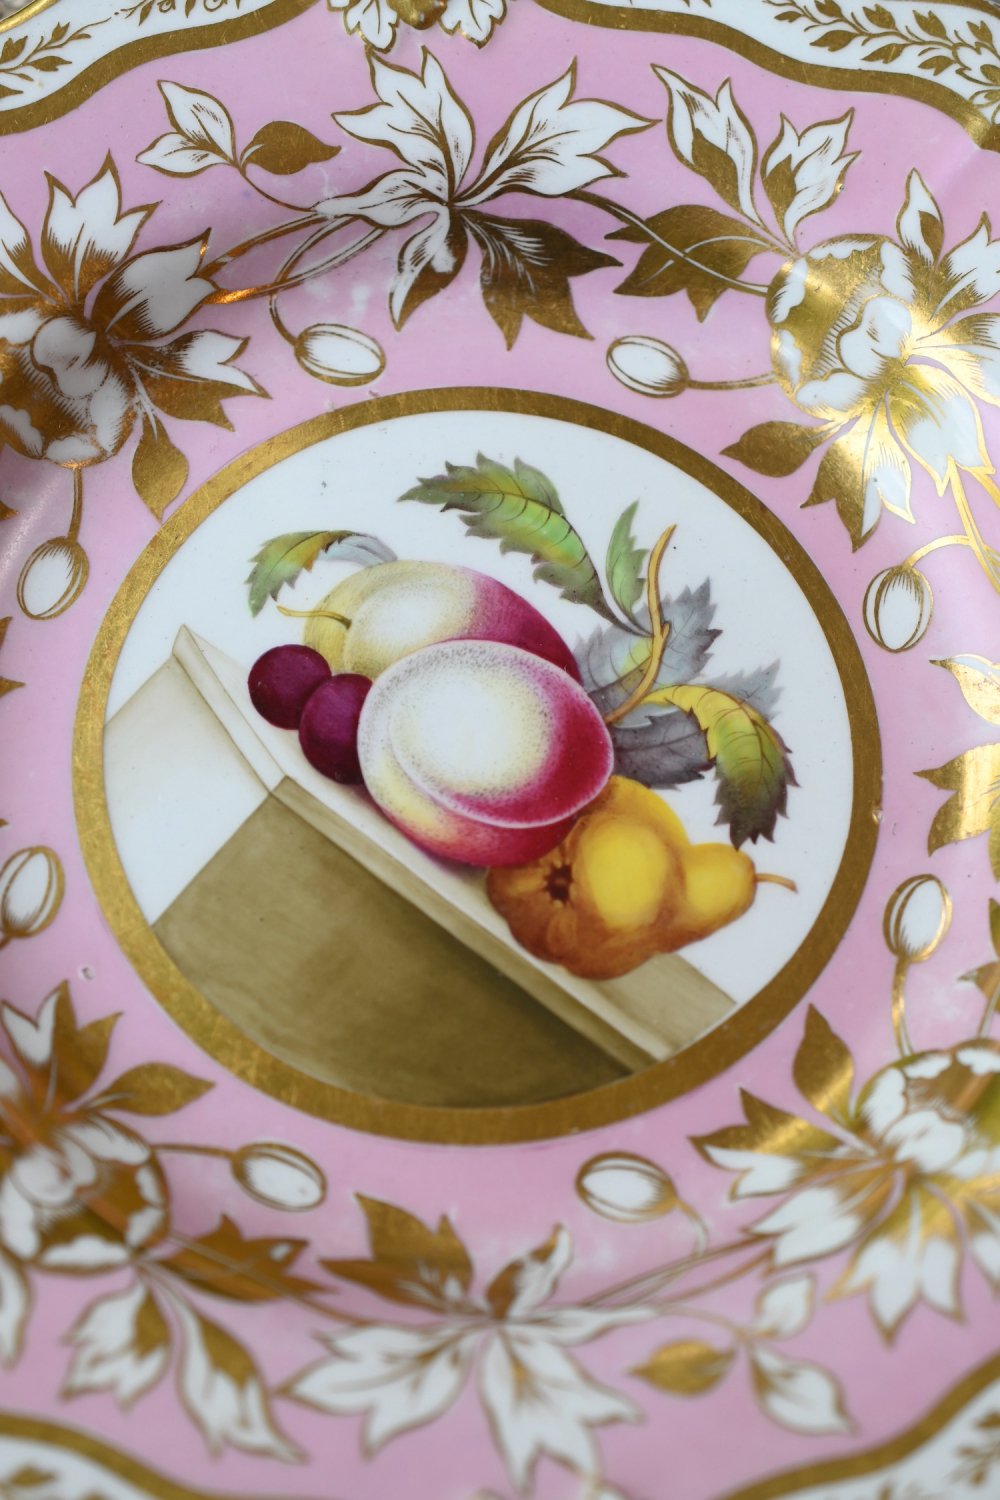 リッジウェイ・ポンパドールピンク色と金彩　絵画のように描かれたフルーツが美しいキャビネットプレートをイギリス　コッツウォルズよりお届けいたします